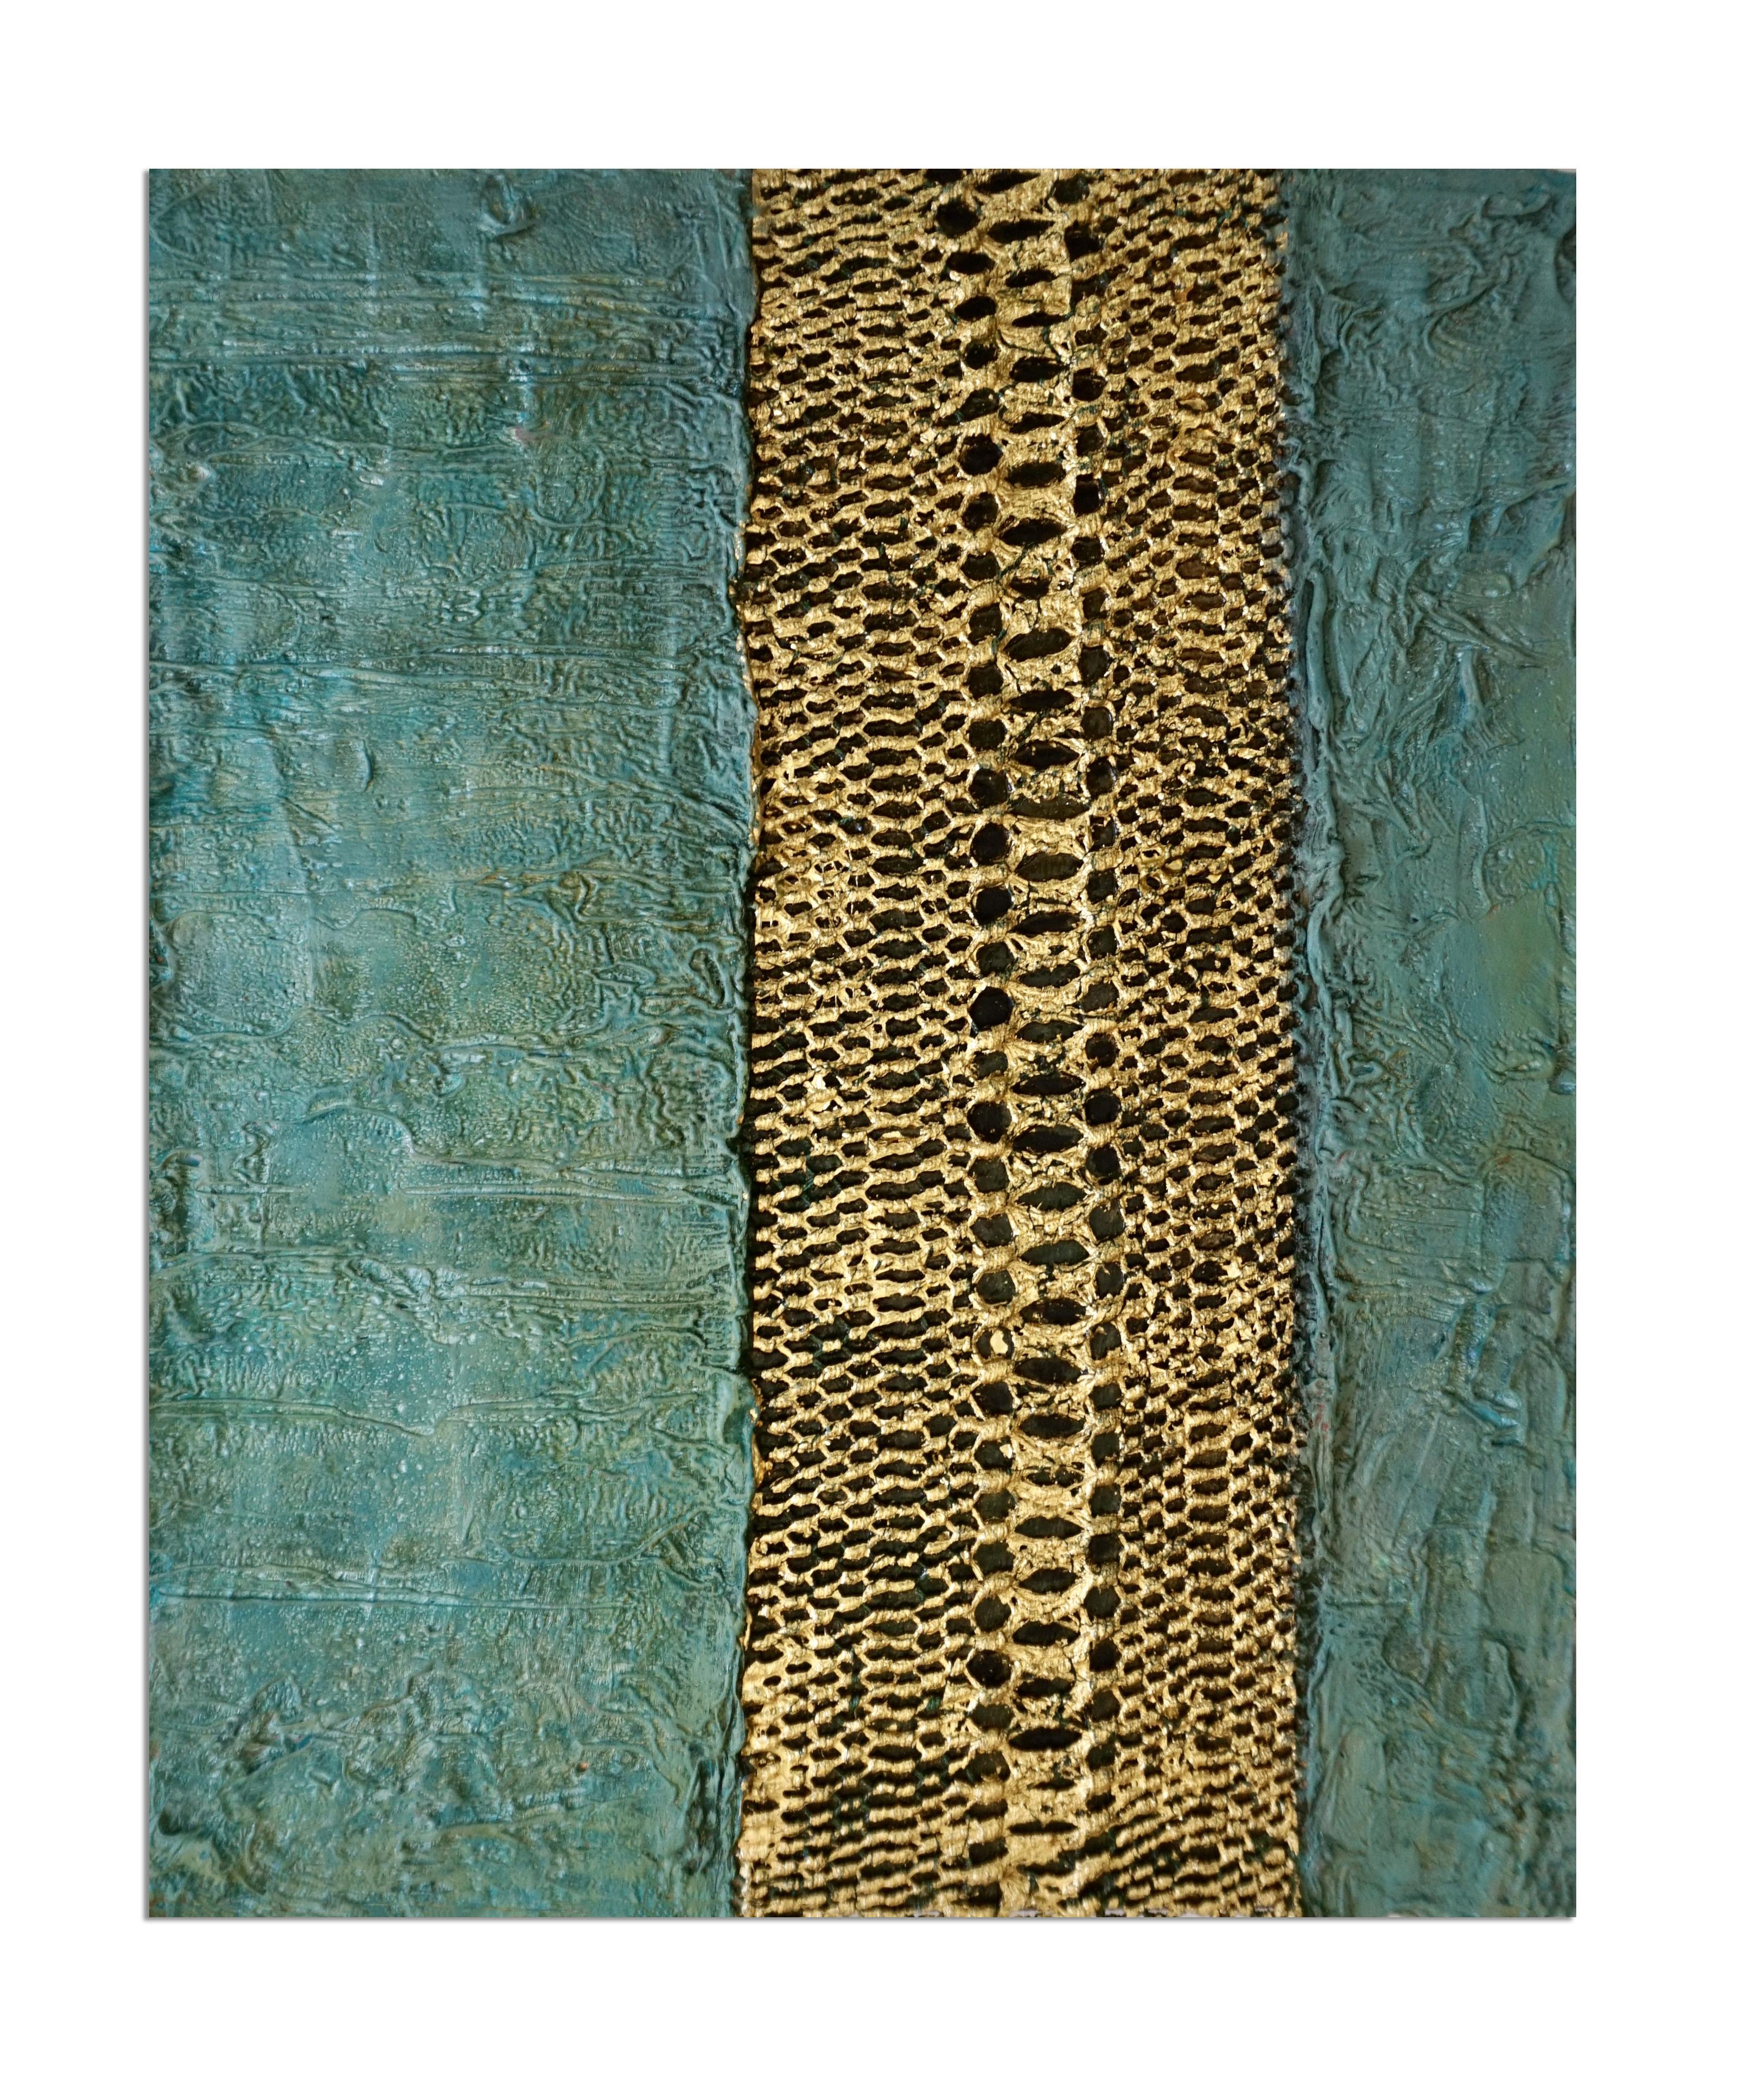 Mémoire tactile n° 120 Techniques mixtes : nœuds de soie Manton de manilla, or 24 carats sur bois - Painting de Natasha Zupan